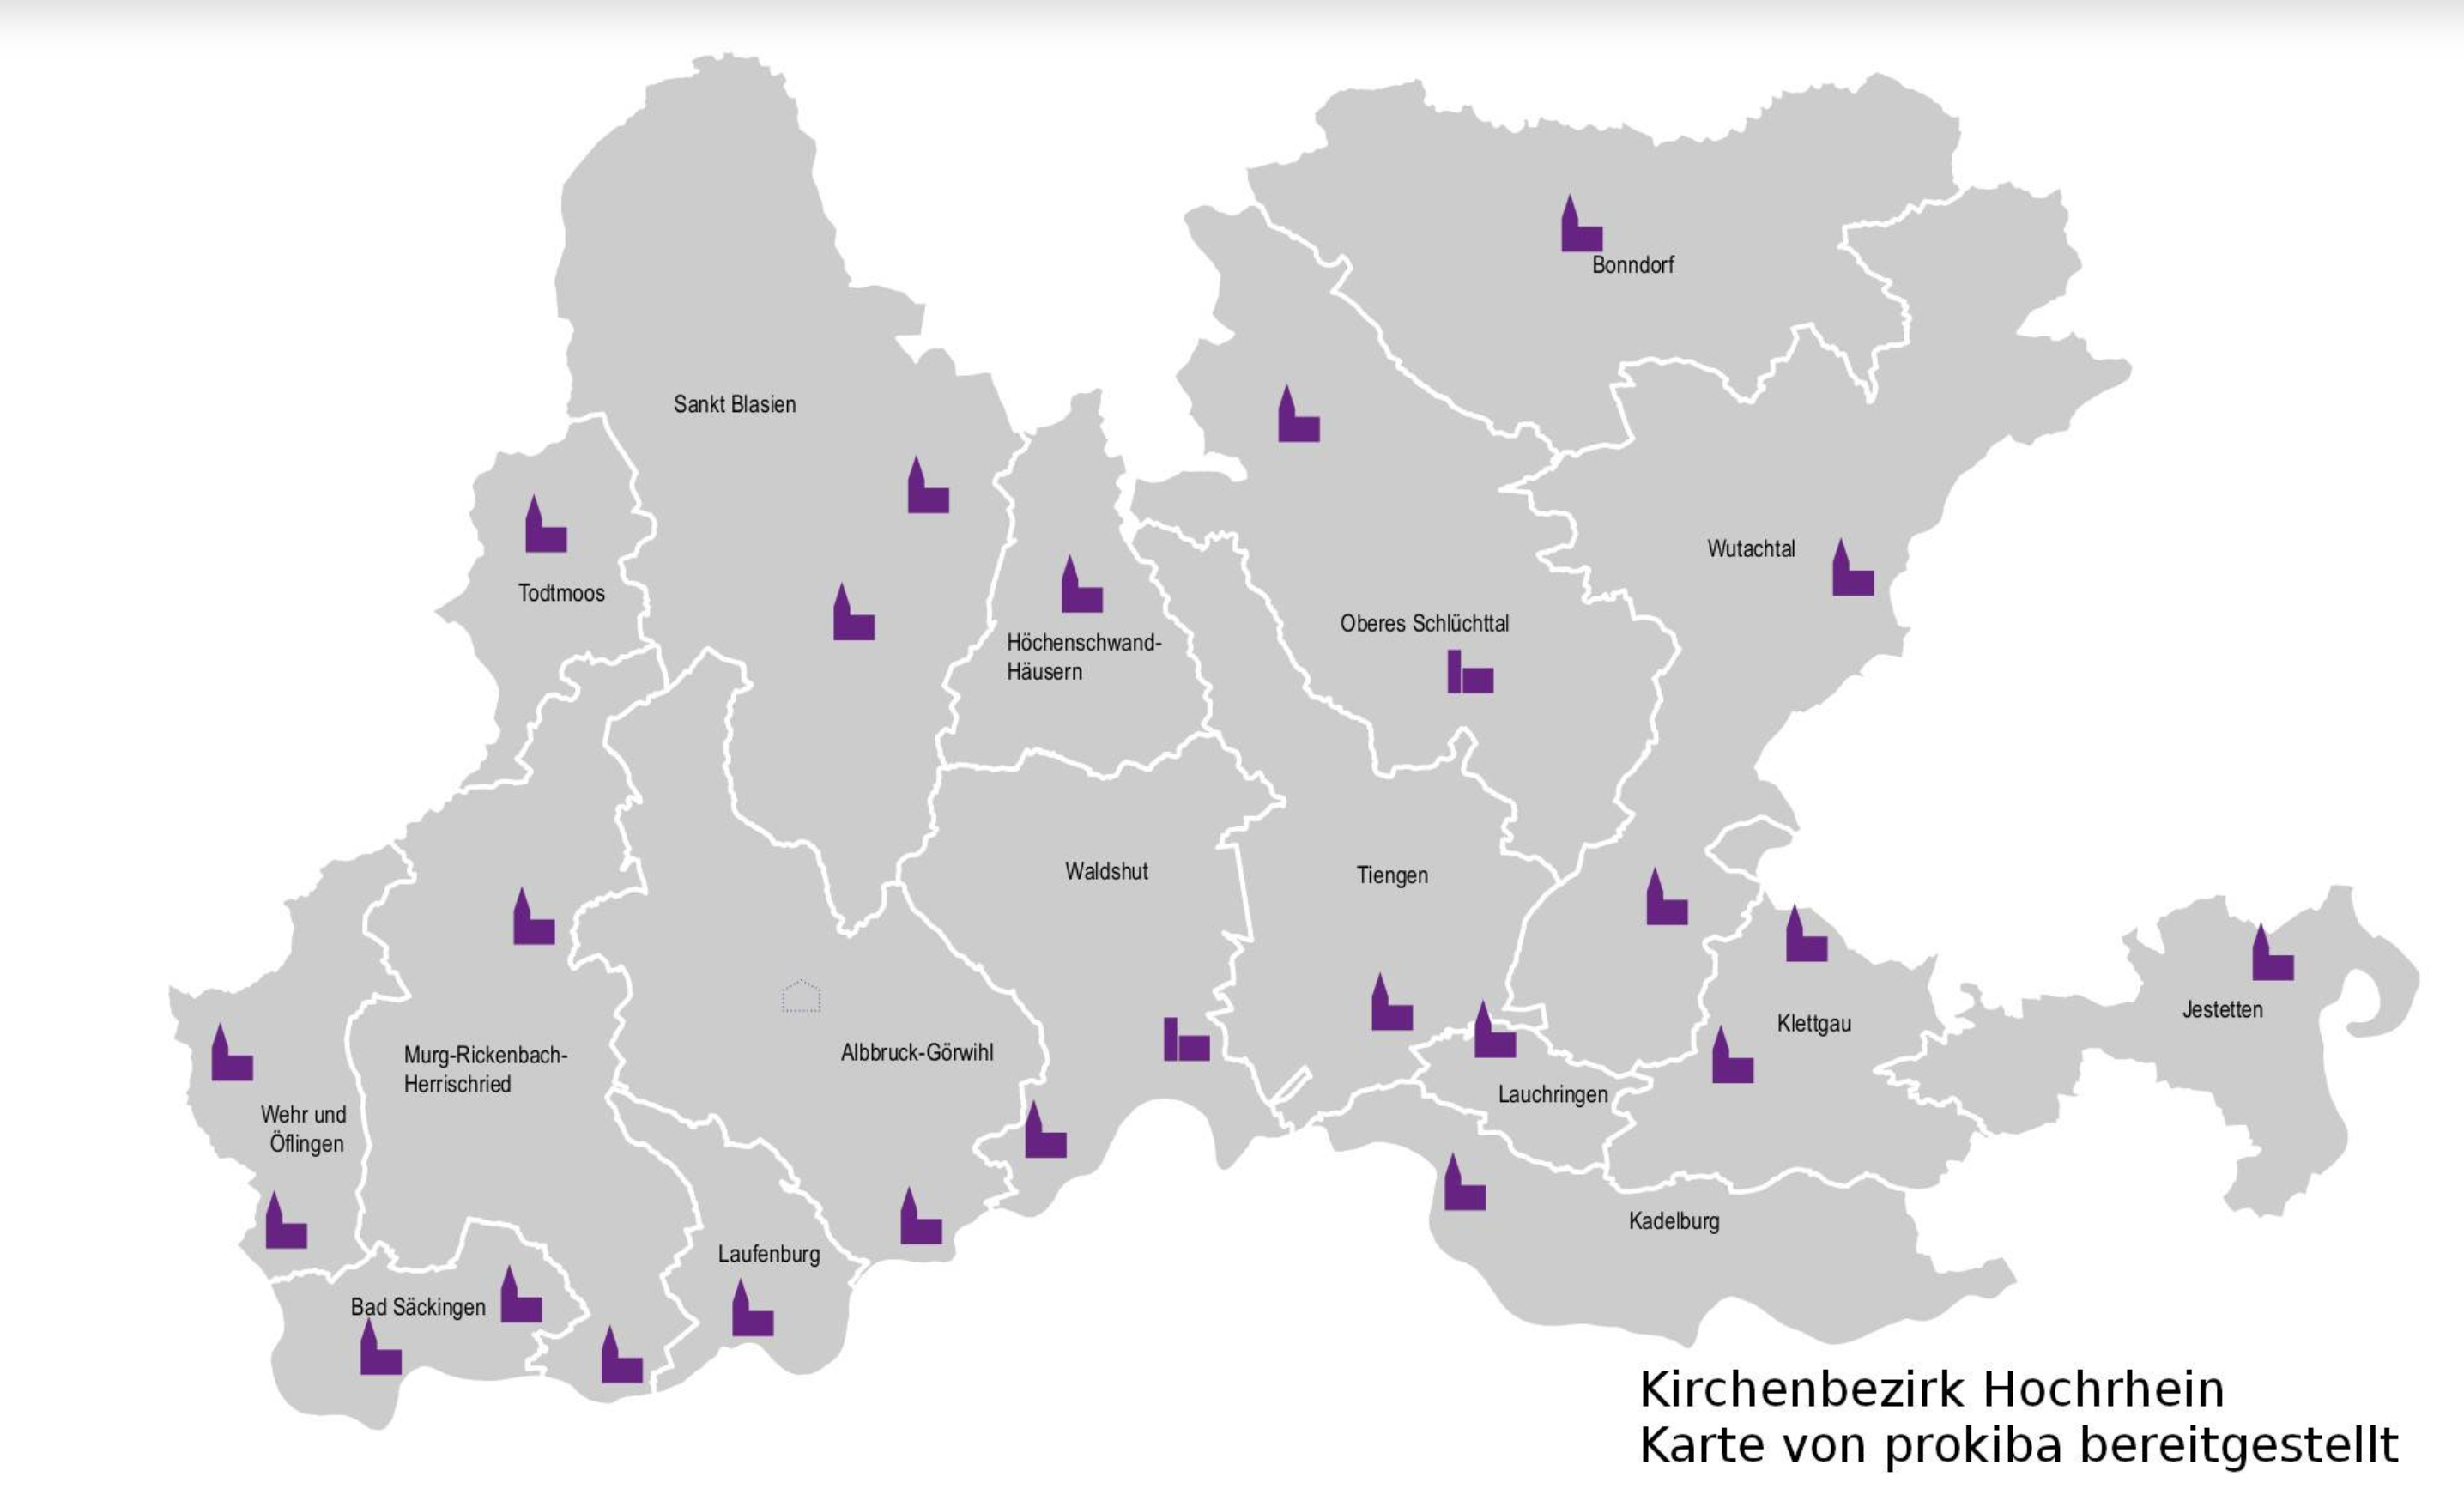 Kirchenbezirk Hochrhein